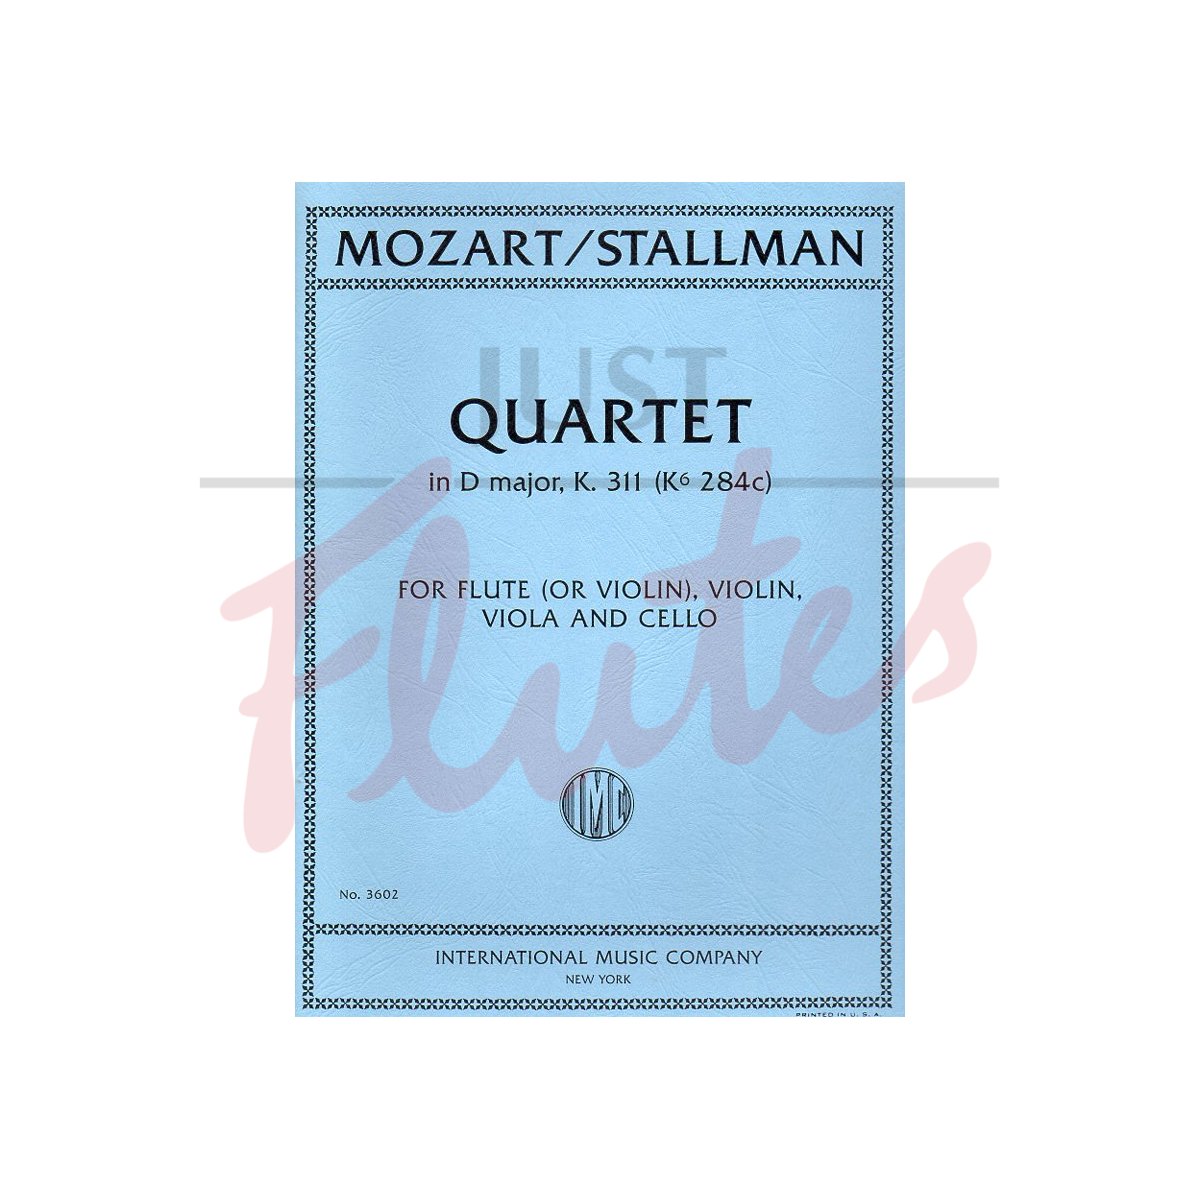 Quartet in D major K311 (K284c) arranged for Flute, Violin, Viola and Cello